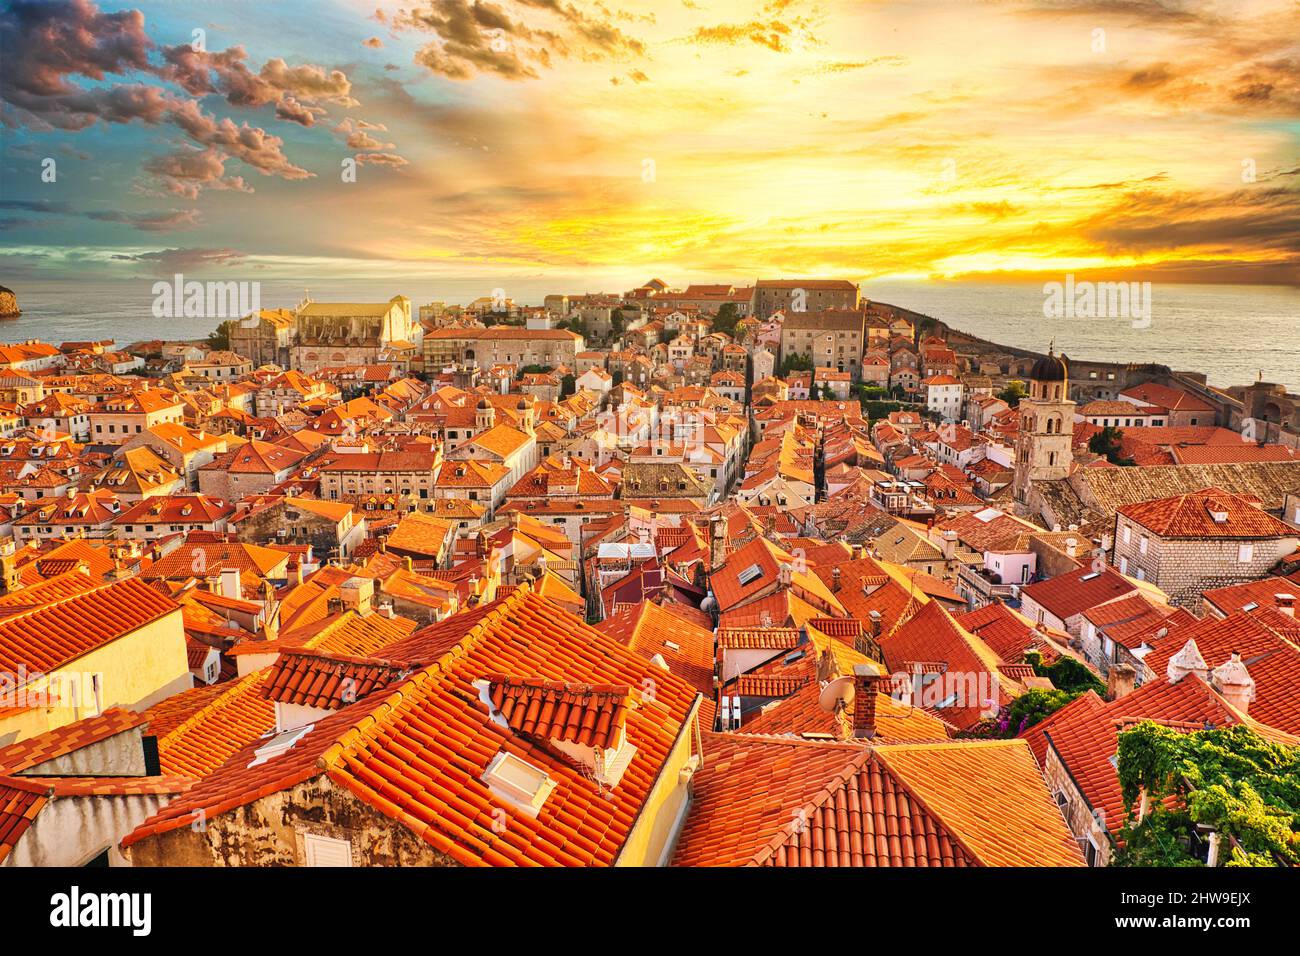 Vista aerea al tramonto sulle mura di Dubrovnik in Croazia. Vista della Cattedrale dell'Assunzione della Vergine Maria e la chiesa Crkva sv. Vlaho Saint Biagio di Foto Stock